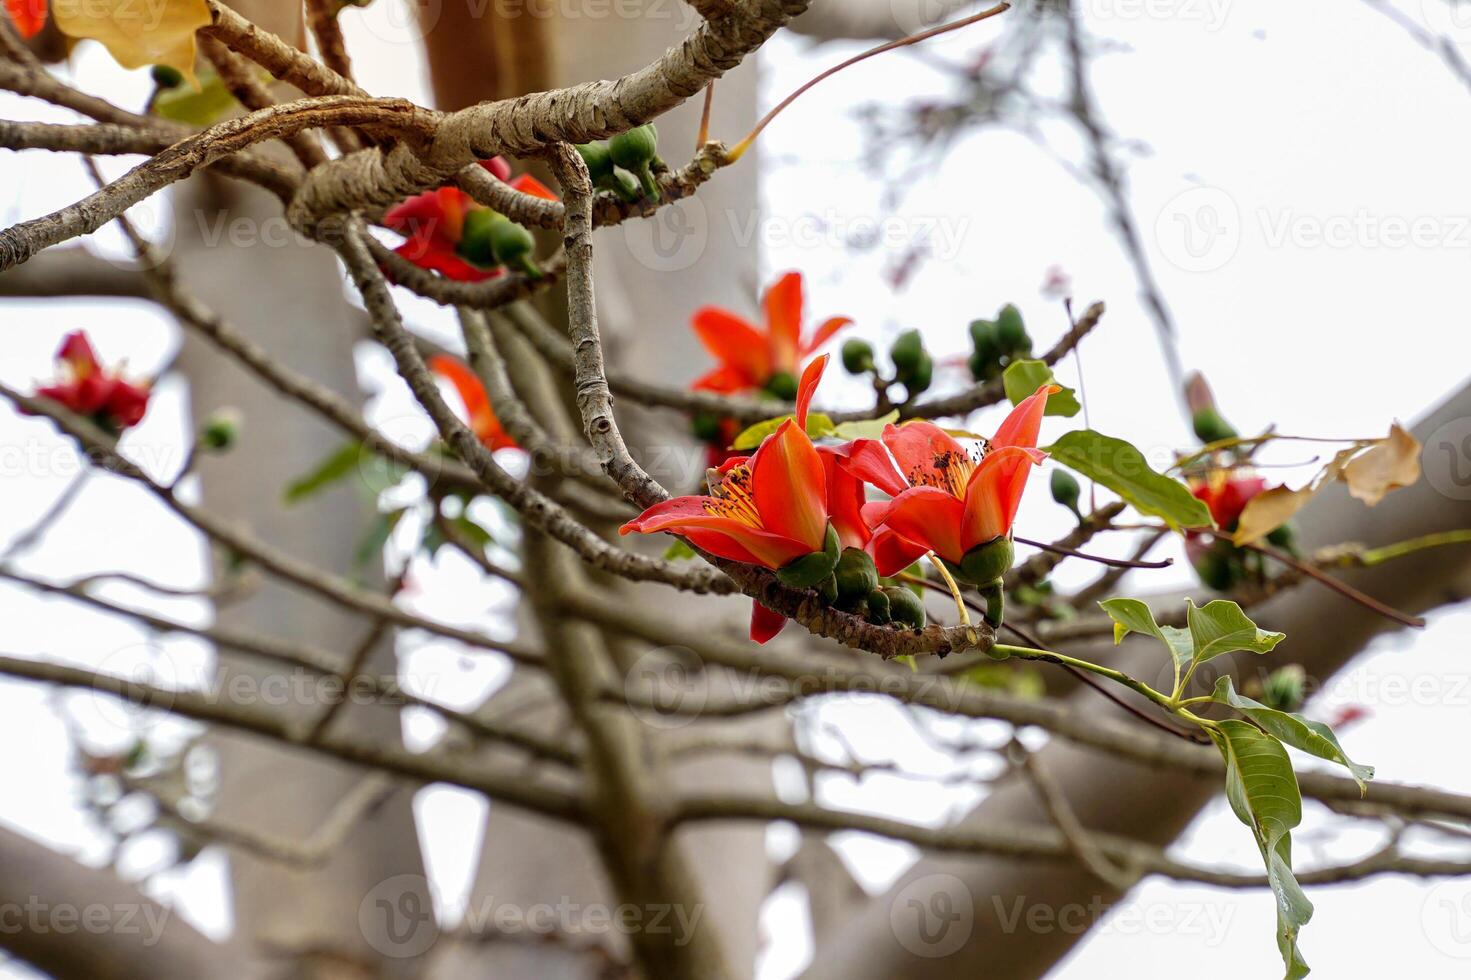 rouge coton arbre est une vivace plante. fleurs à le prend fin de le branches. le Célibataire fleurs sont grand et groupé dans rouge et orange. le base de le fleur est une solide tasse ou calice coincé ensemble. photo